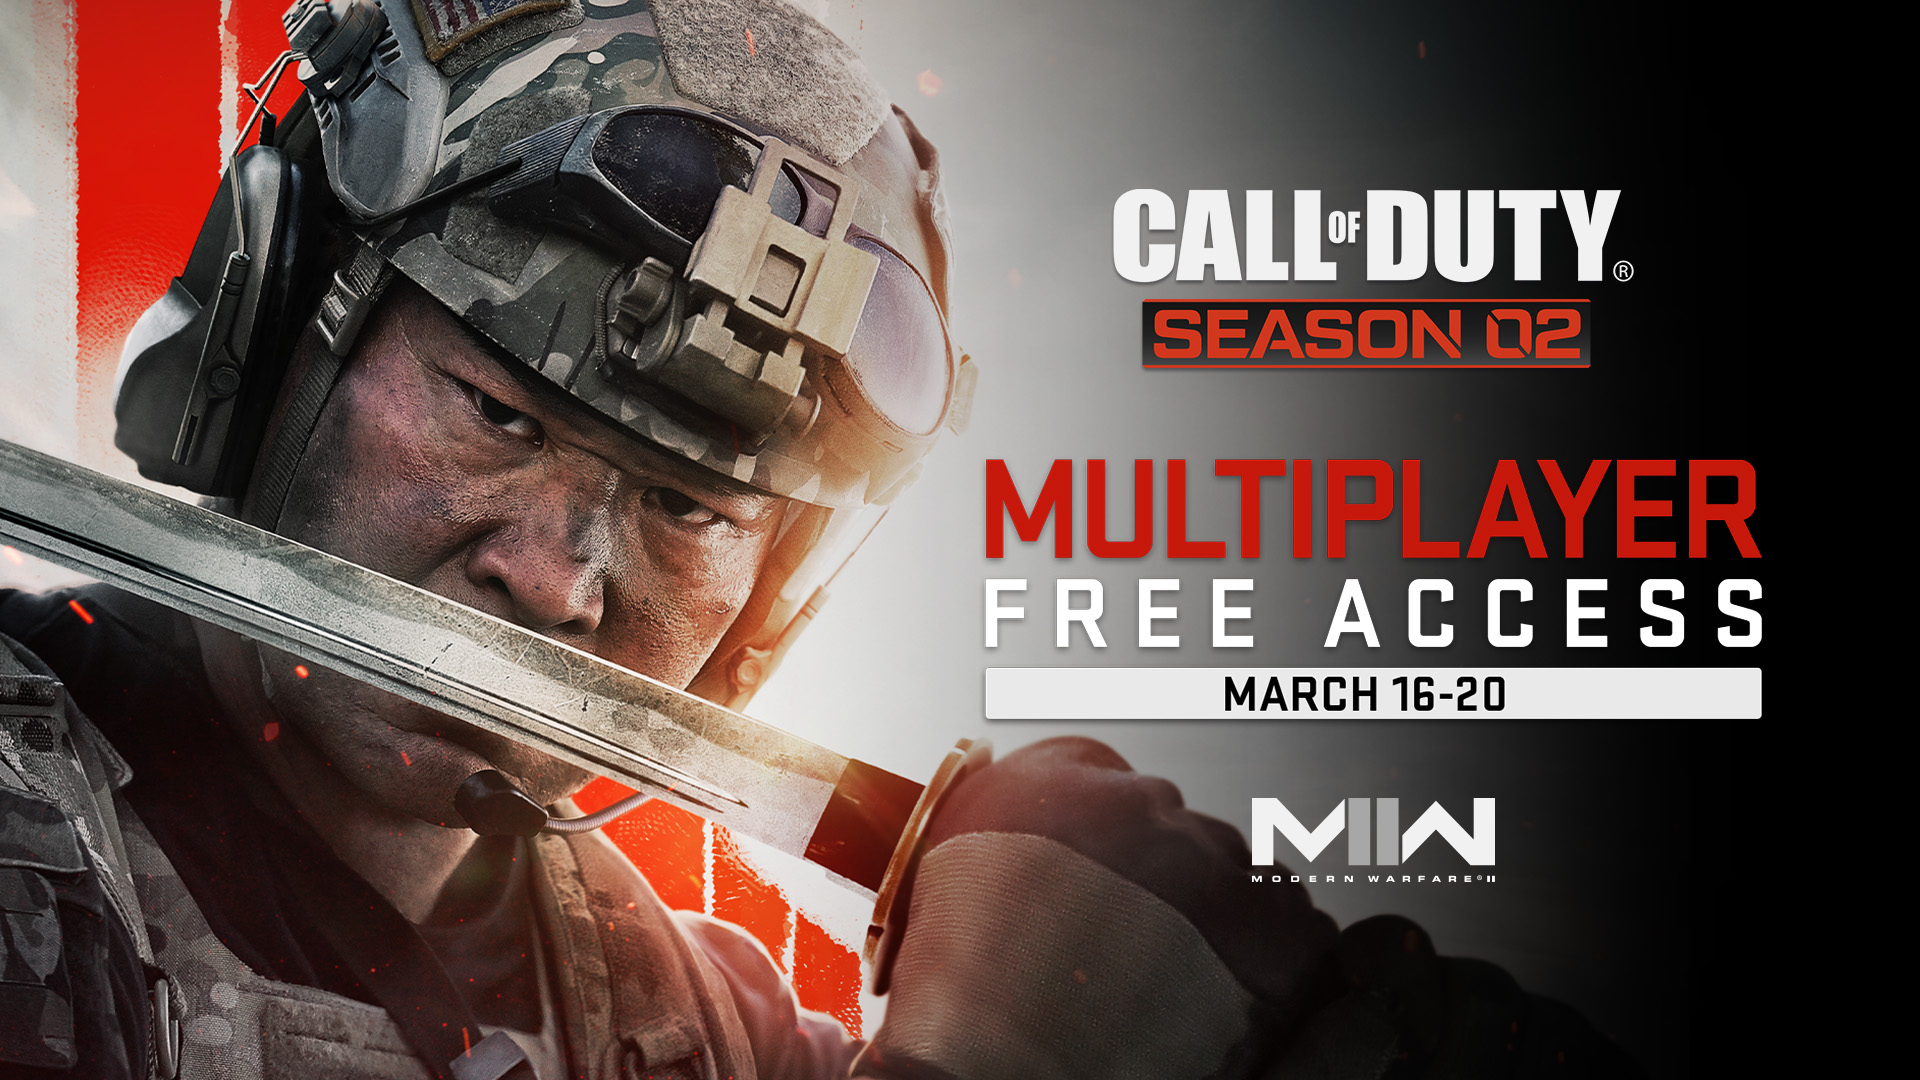 Acceso gratuito al modo Multijugador en Call of Duty: Modern Warfare II durante cinco días: del 16 de marzo al 20 de marzo